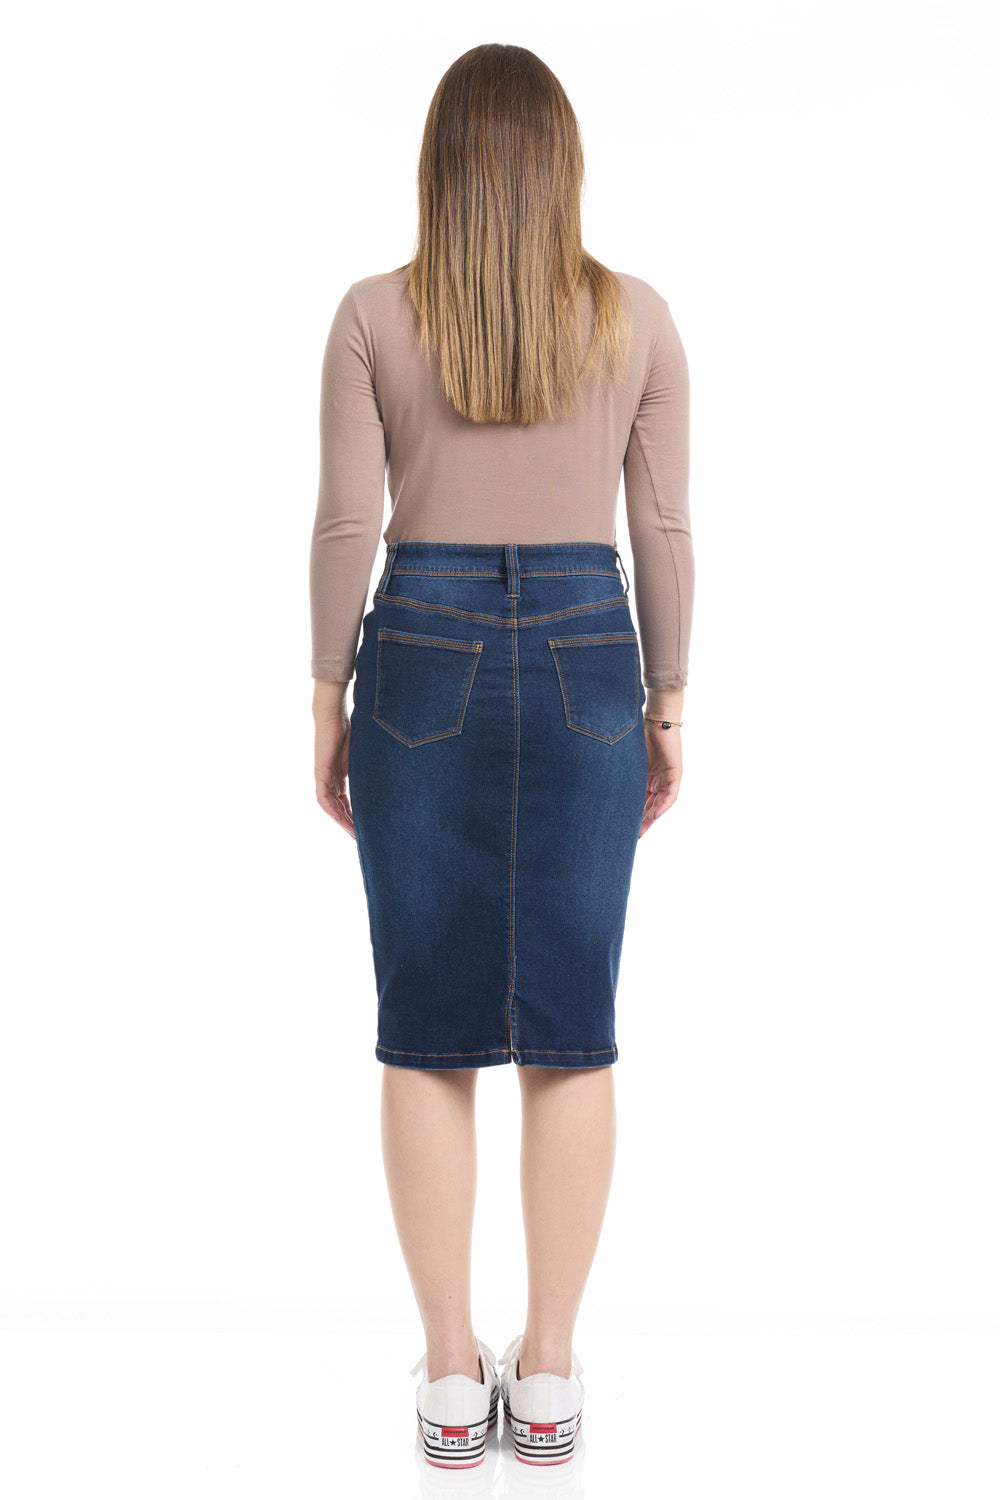 tznius knee length stretchy blue denim jean skirt for women